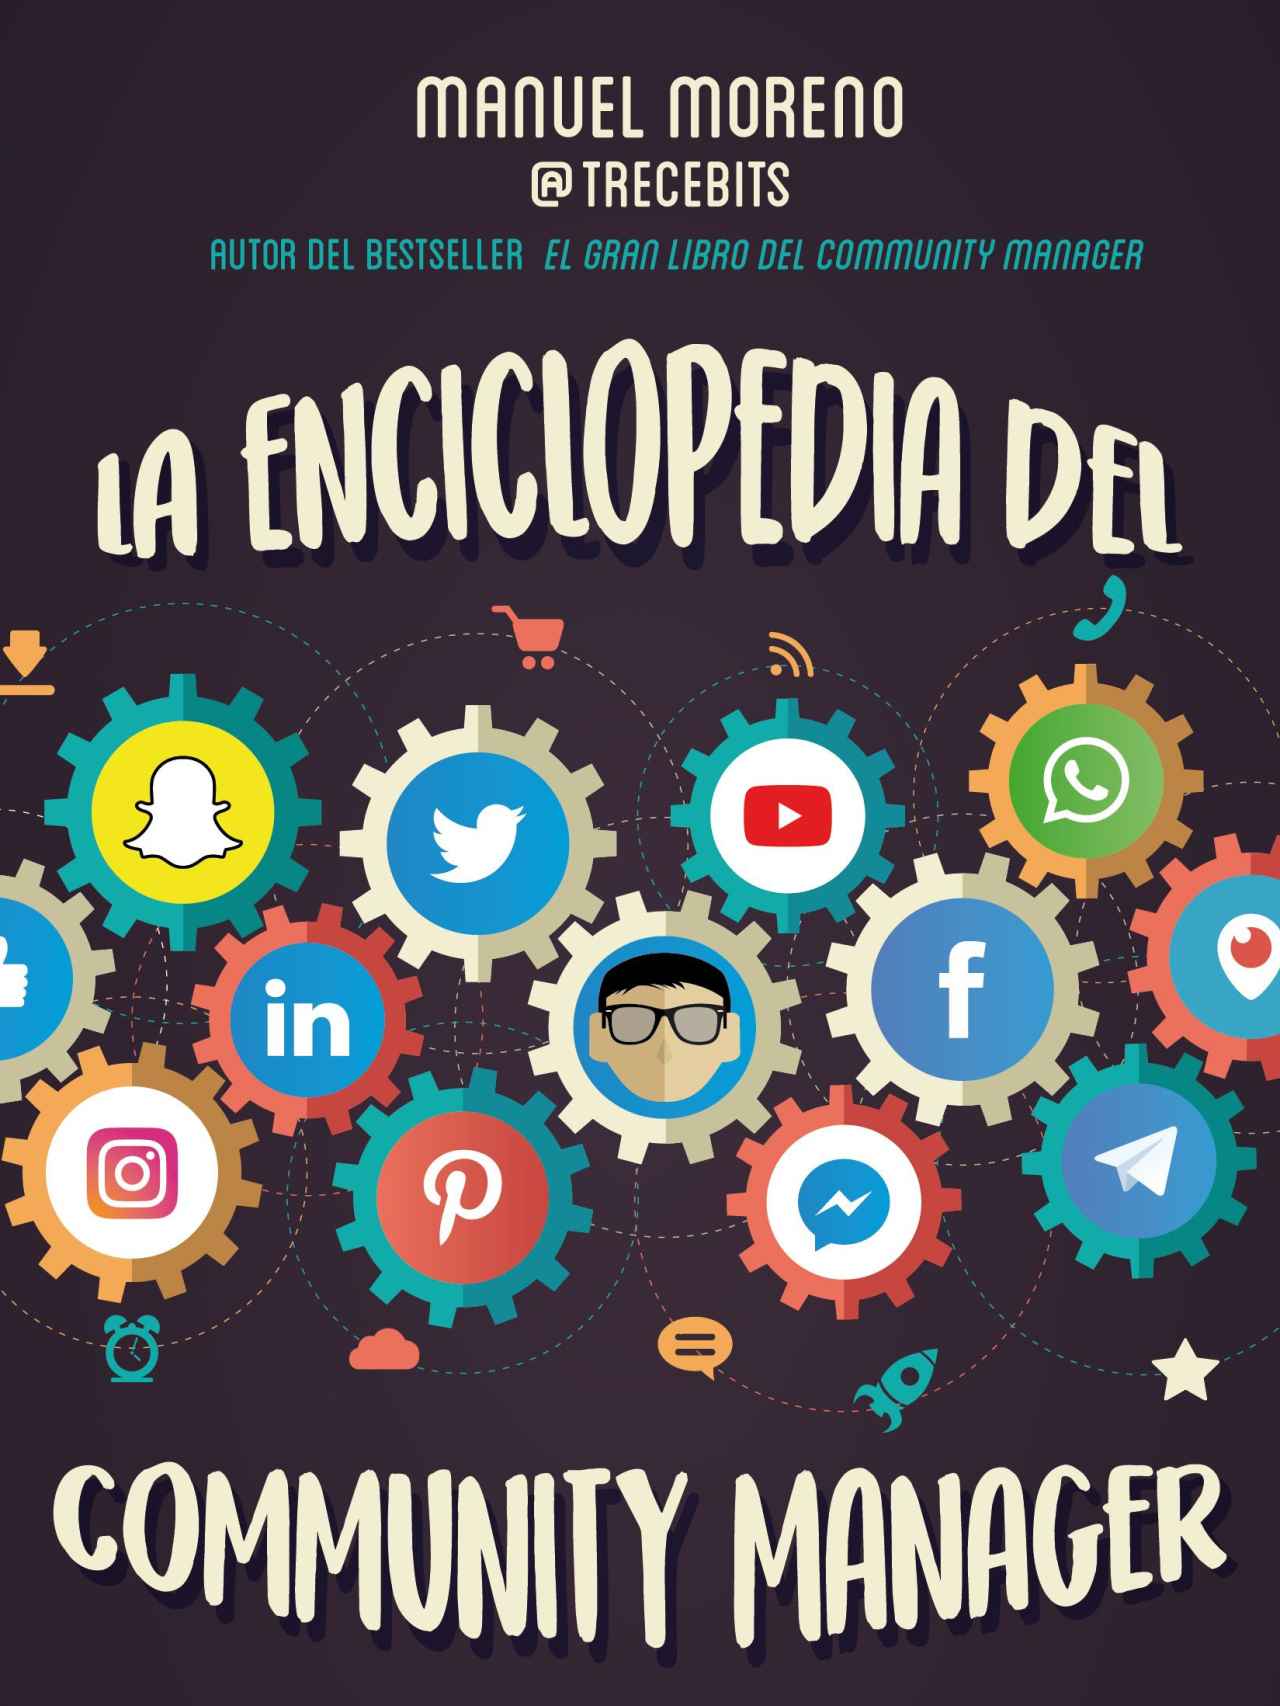 Enciclopedia del community manager.